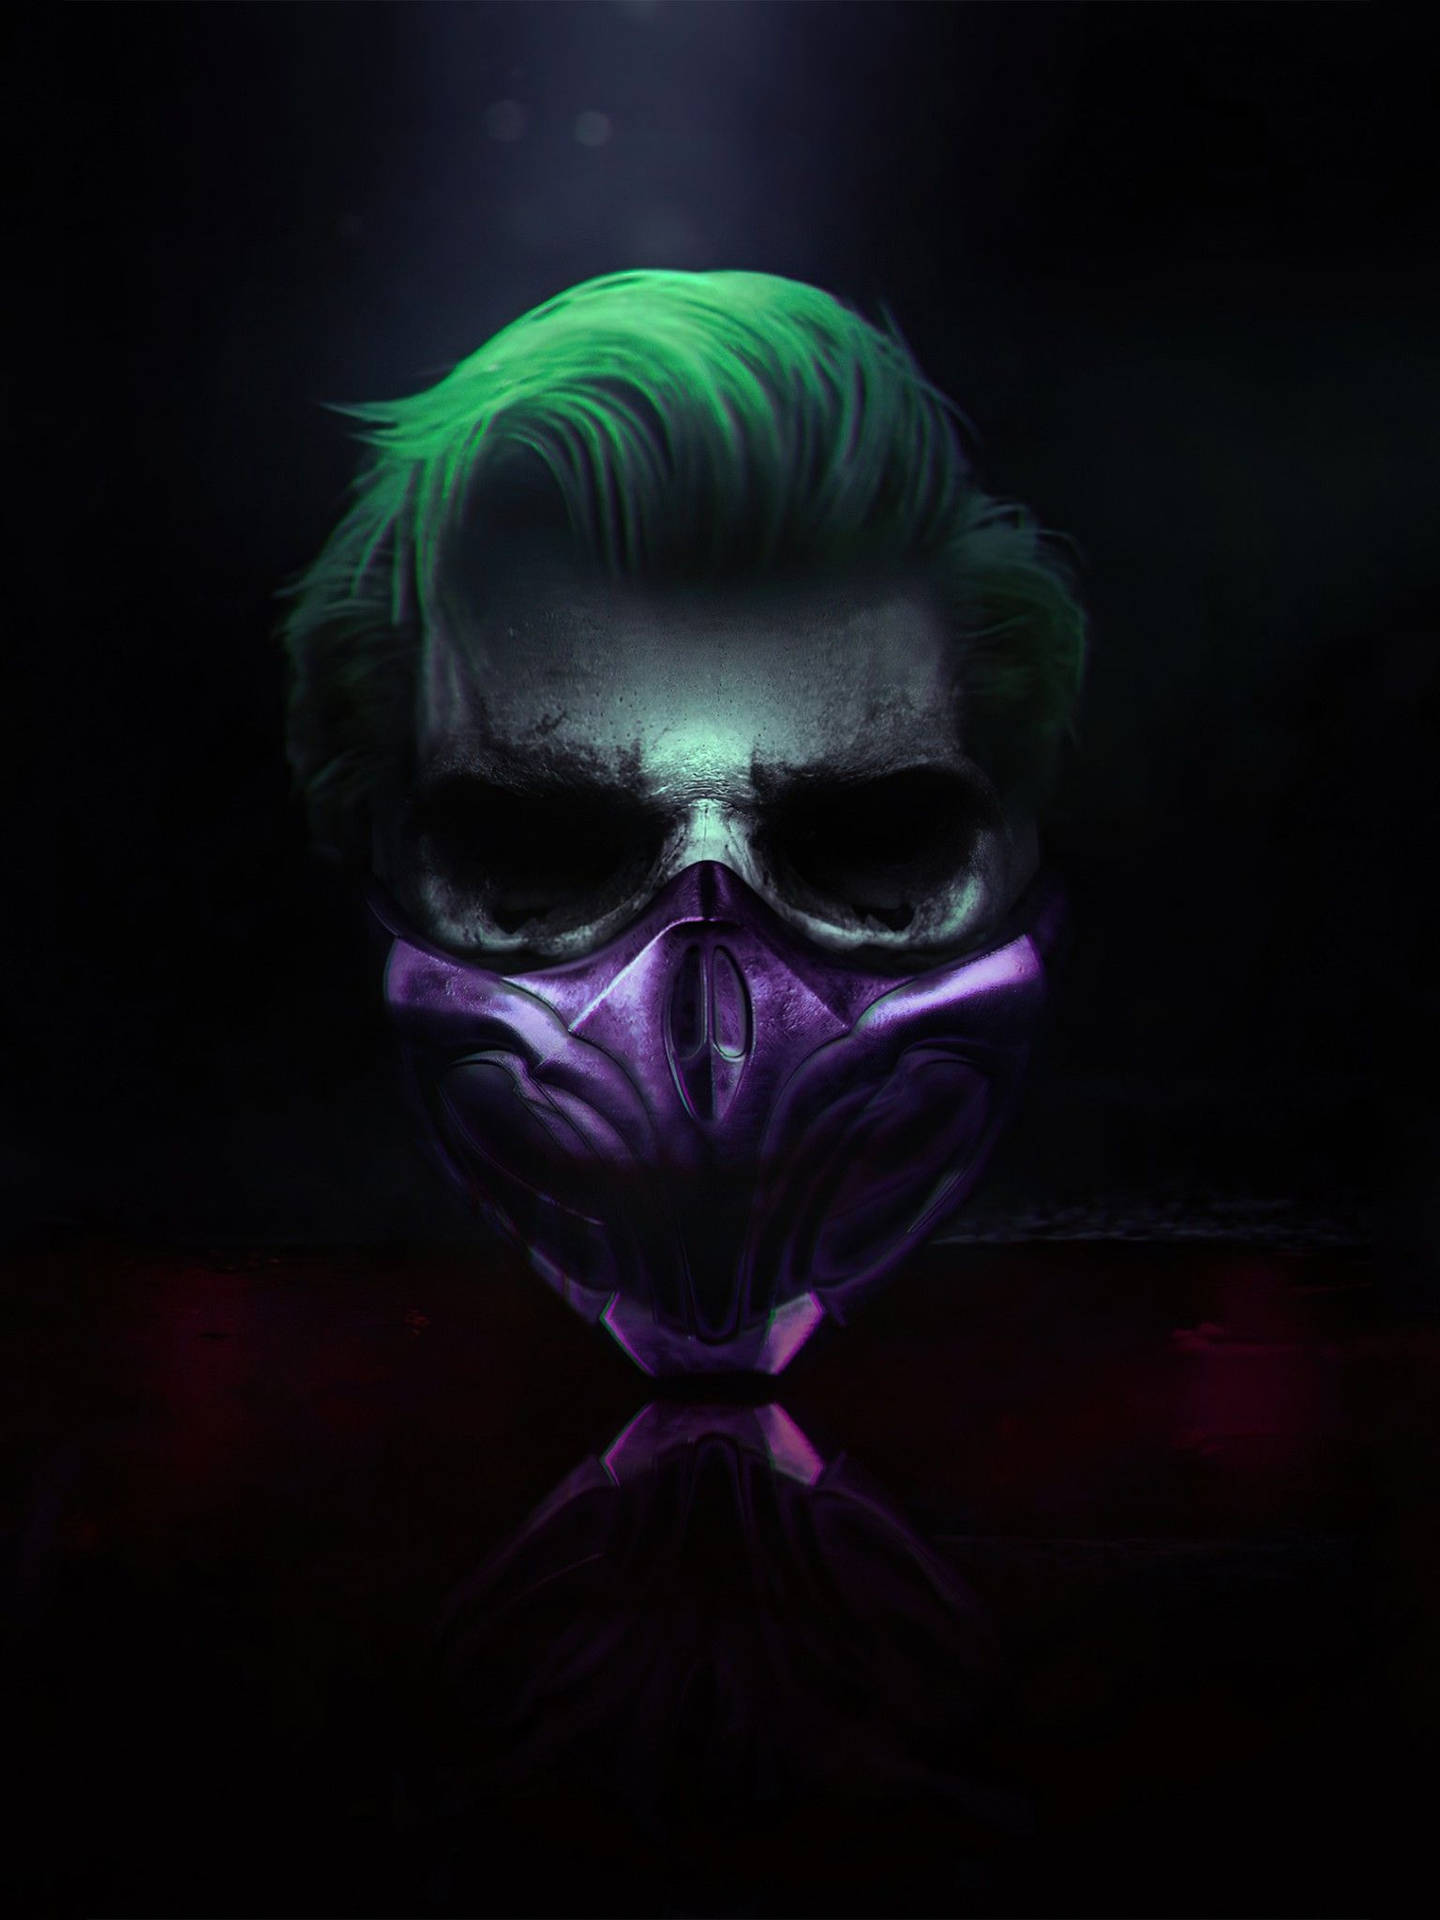 Joker Skull Wallpaper - Hd Wallpapers